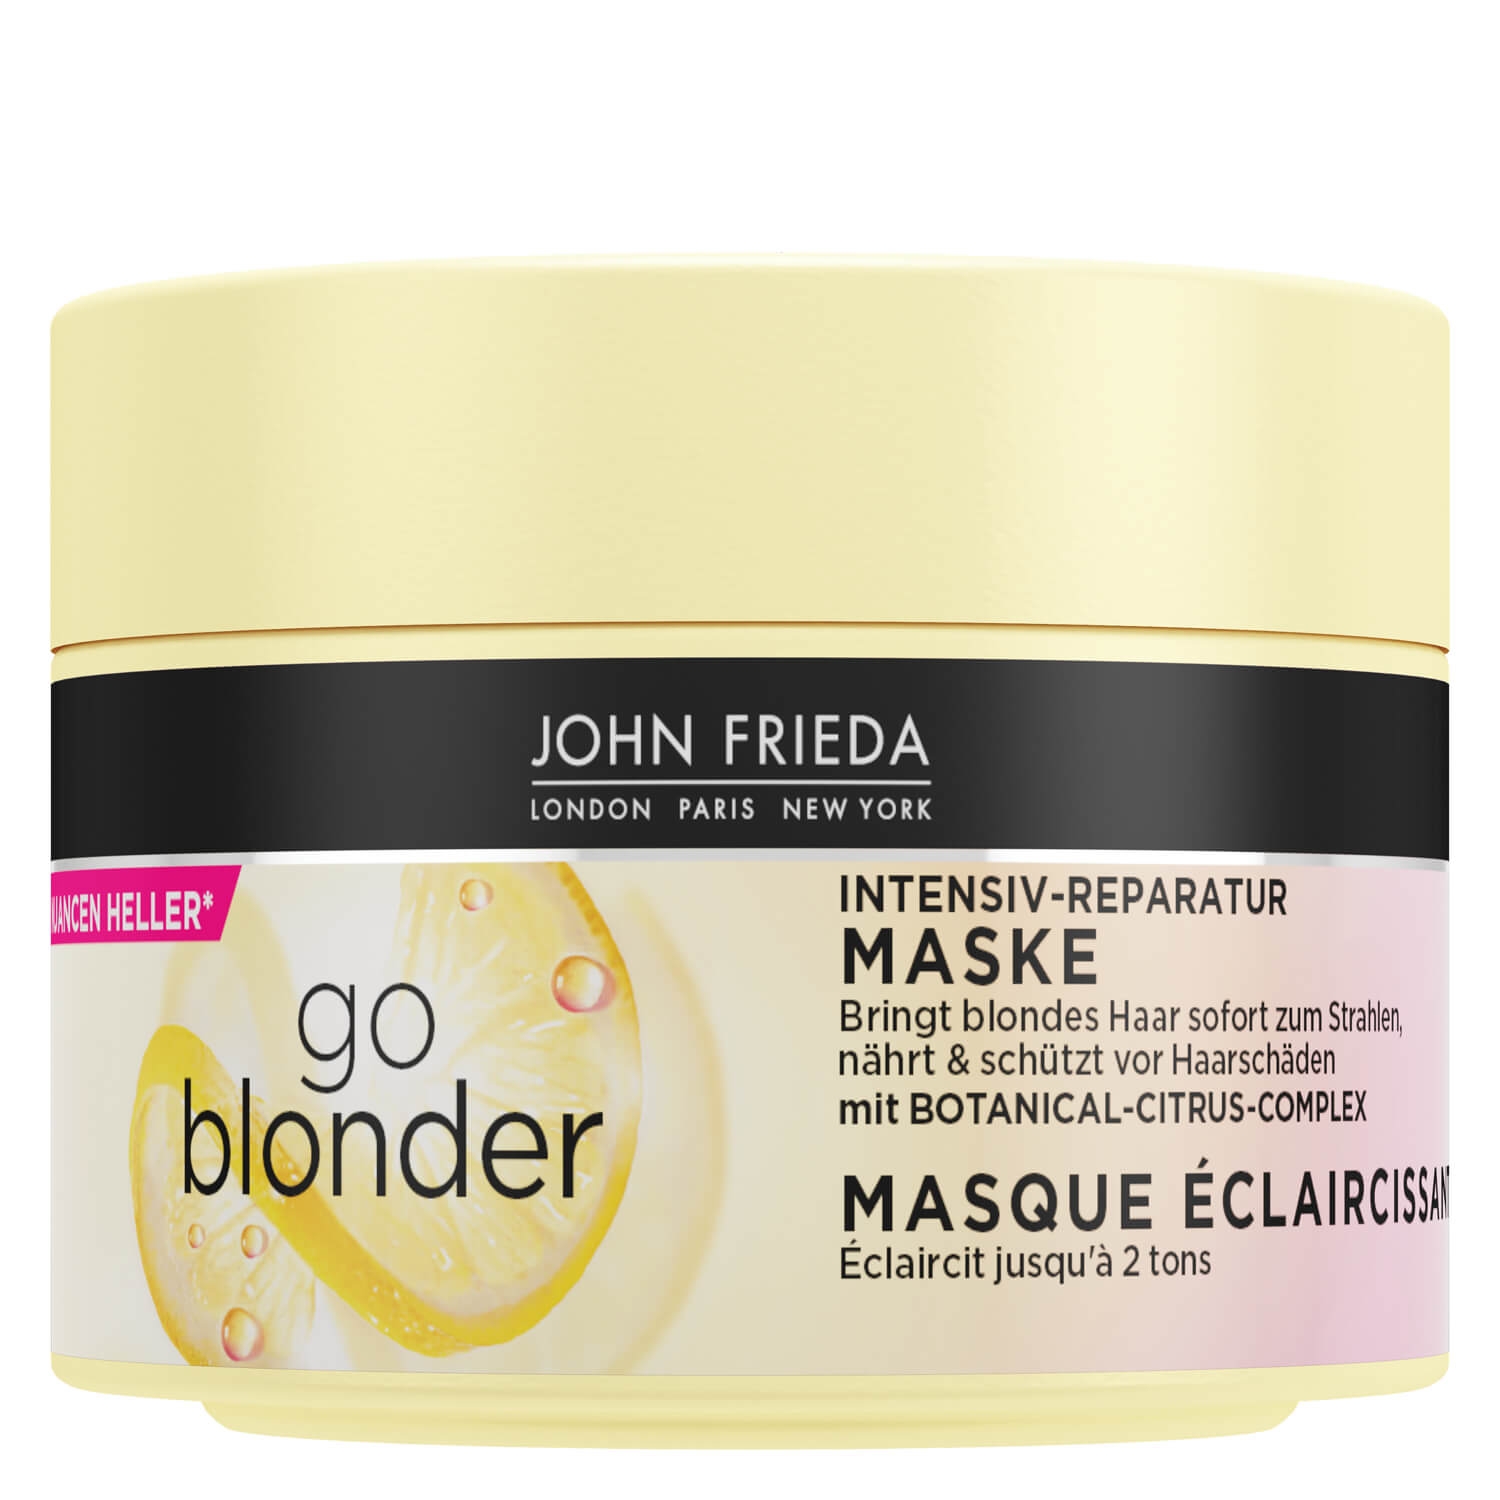 Produktbild von Sheer Blonde - Go Blonder Intensiv Reparatur-Maske